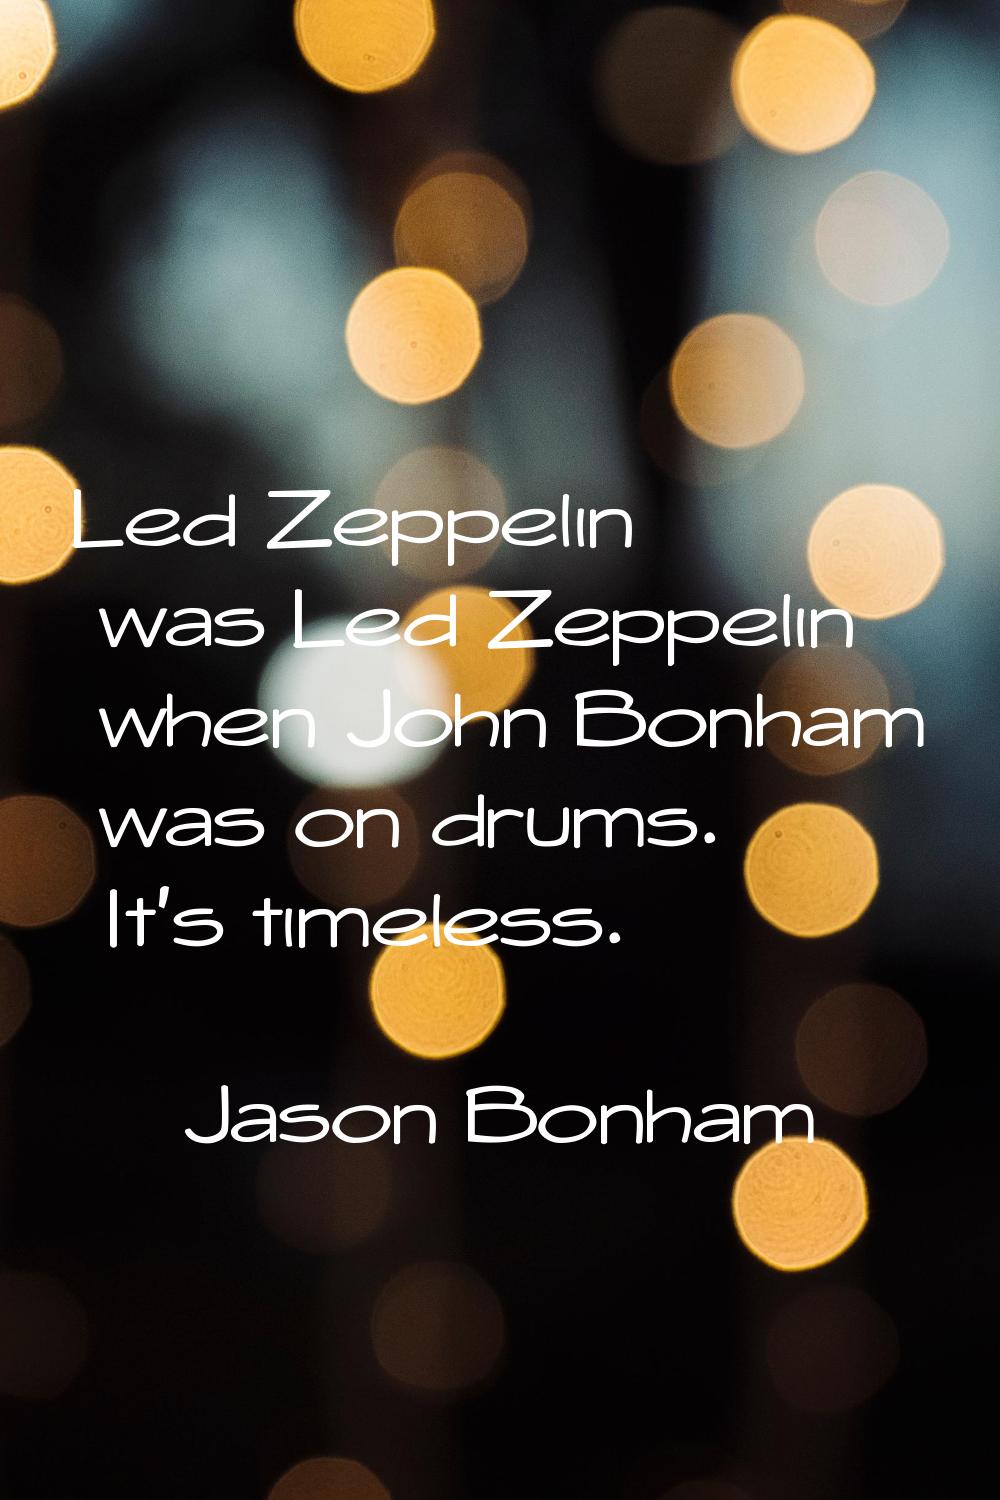 Led Zeppelin was Led Zeppelin when John Bonham was on drums. It's timeless.